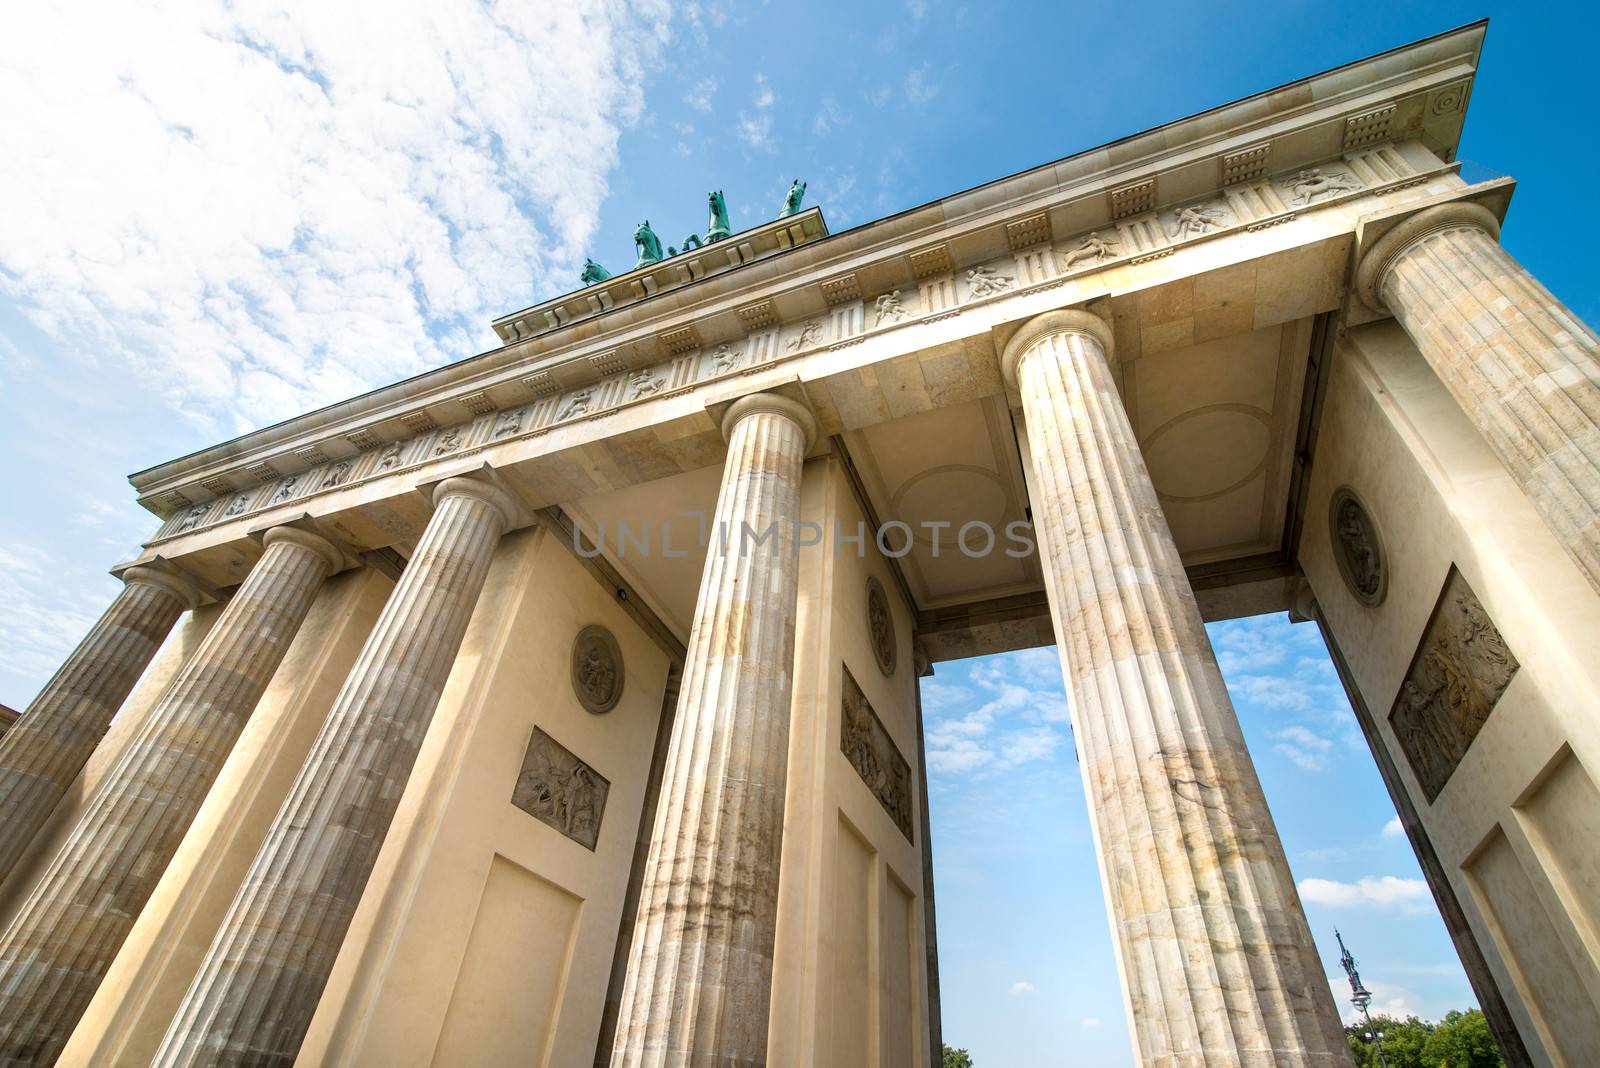 Brandenburg Gate in Berlin by GekaSkr